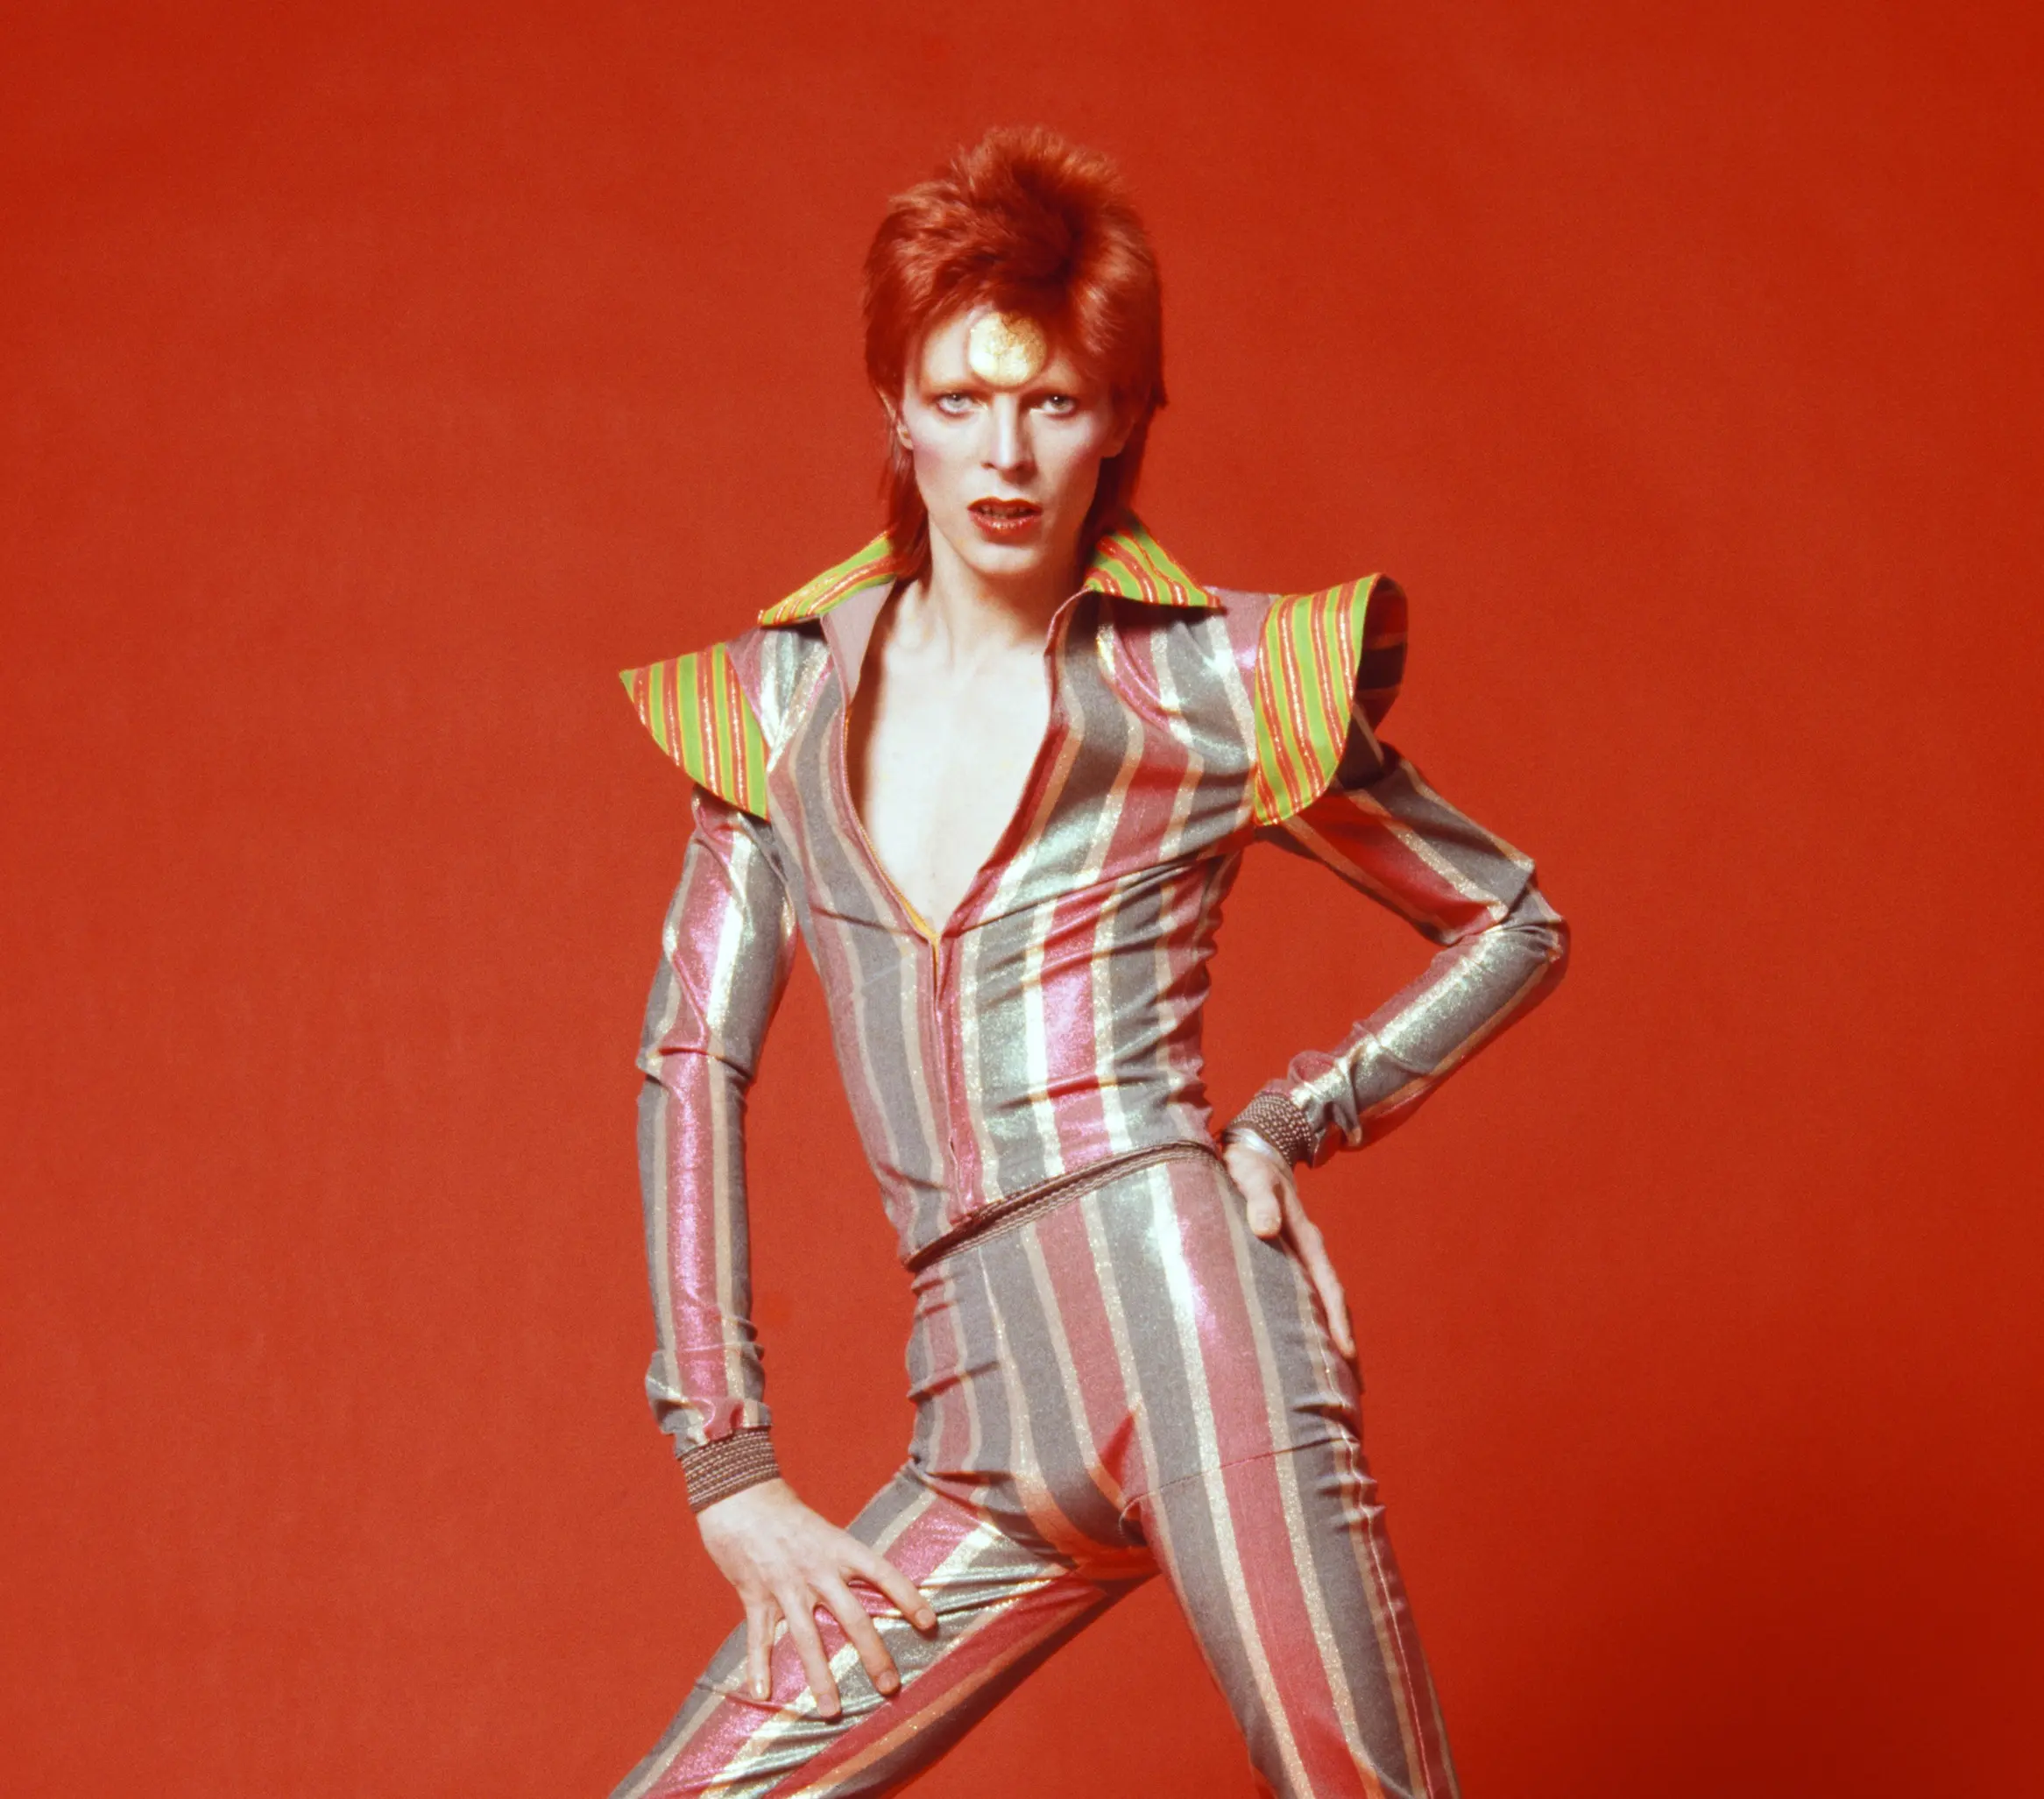 L’expo David Bowie inaugurera la nouvelle Philharmonie de Paris